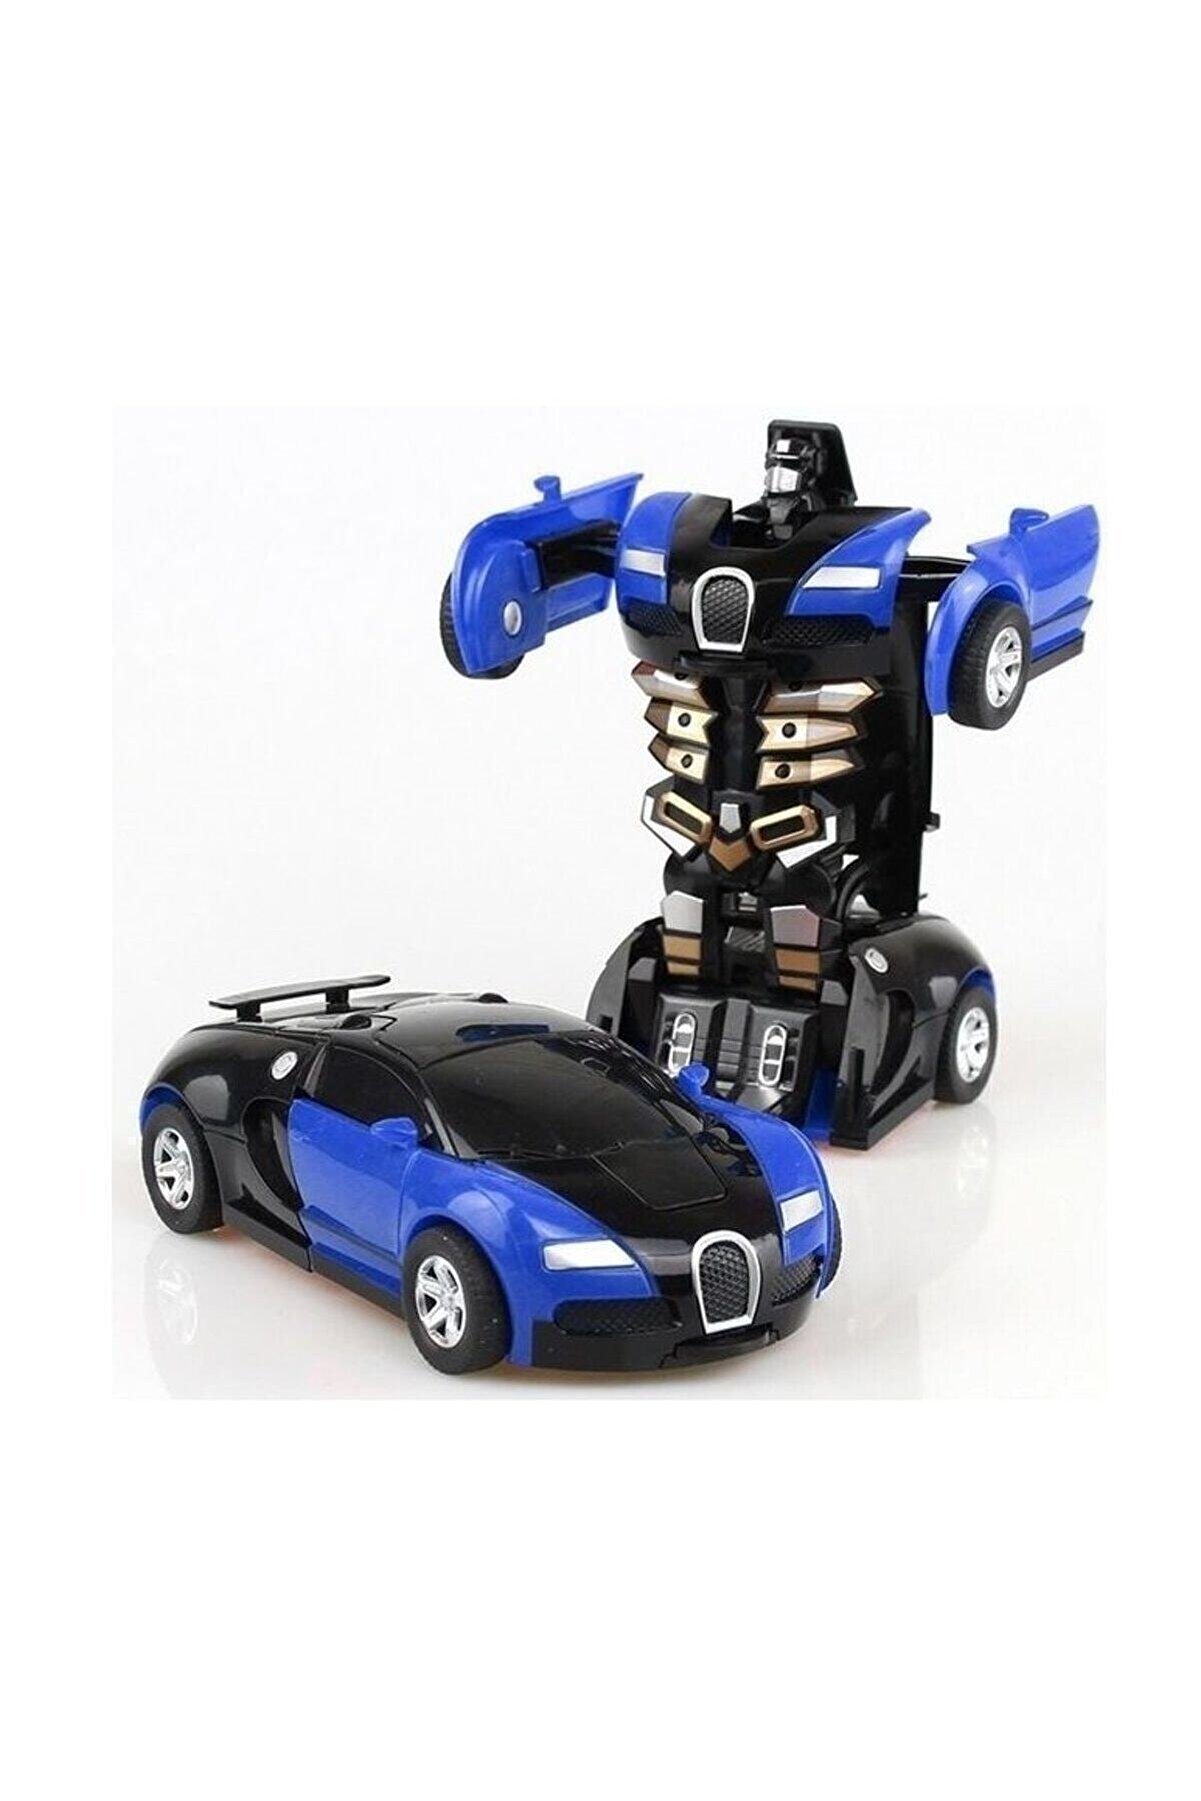 NO NAME Transformers Robot Çek bırak 1:32 Kendinden Robota Dönüşebilen Araba Bugatti